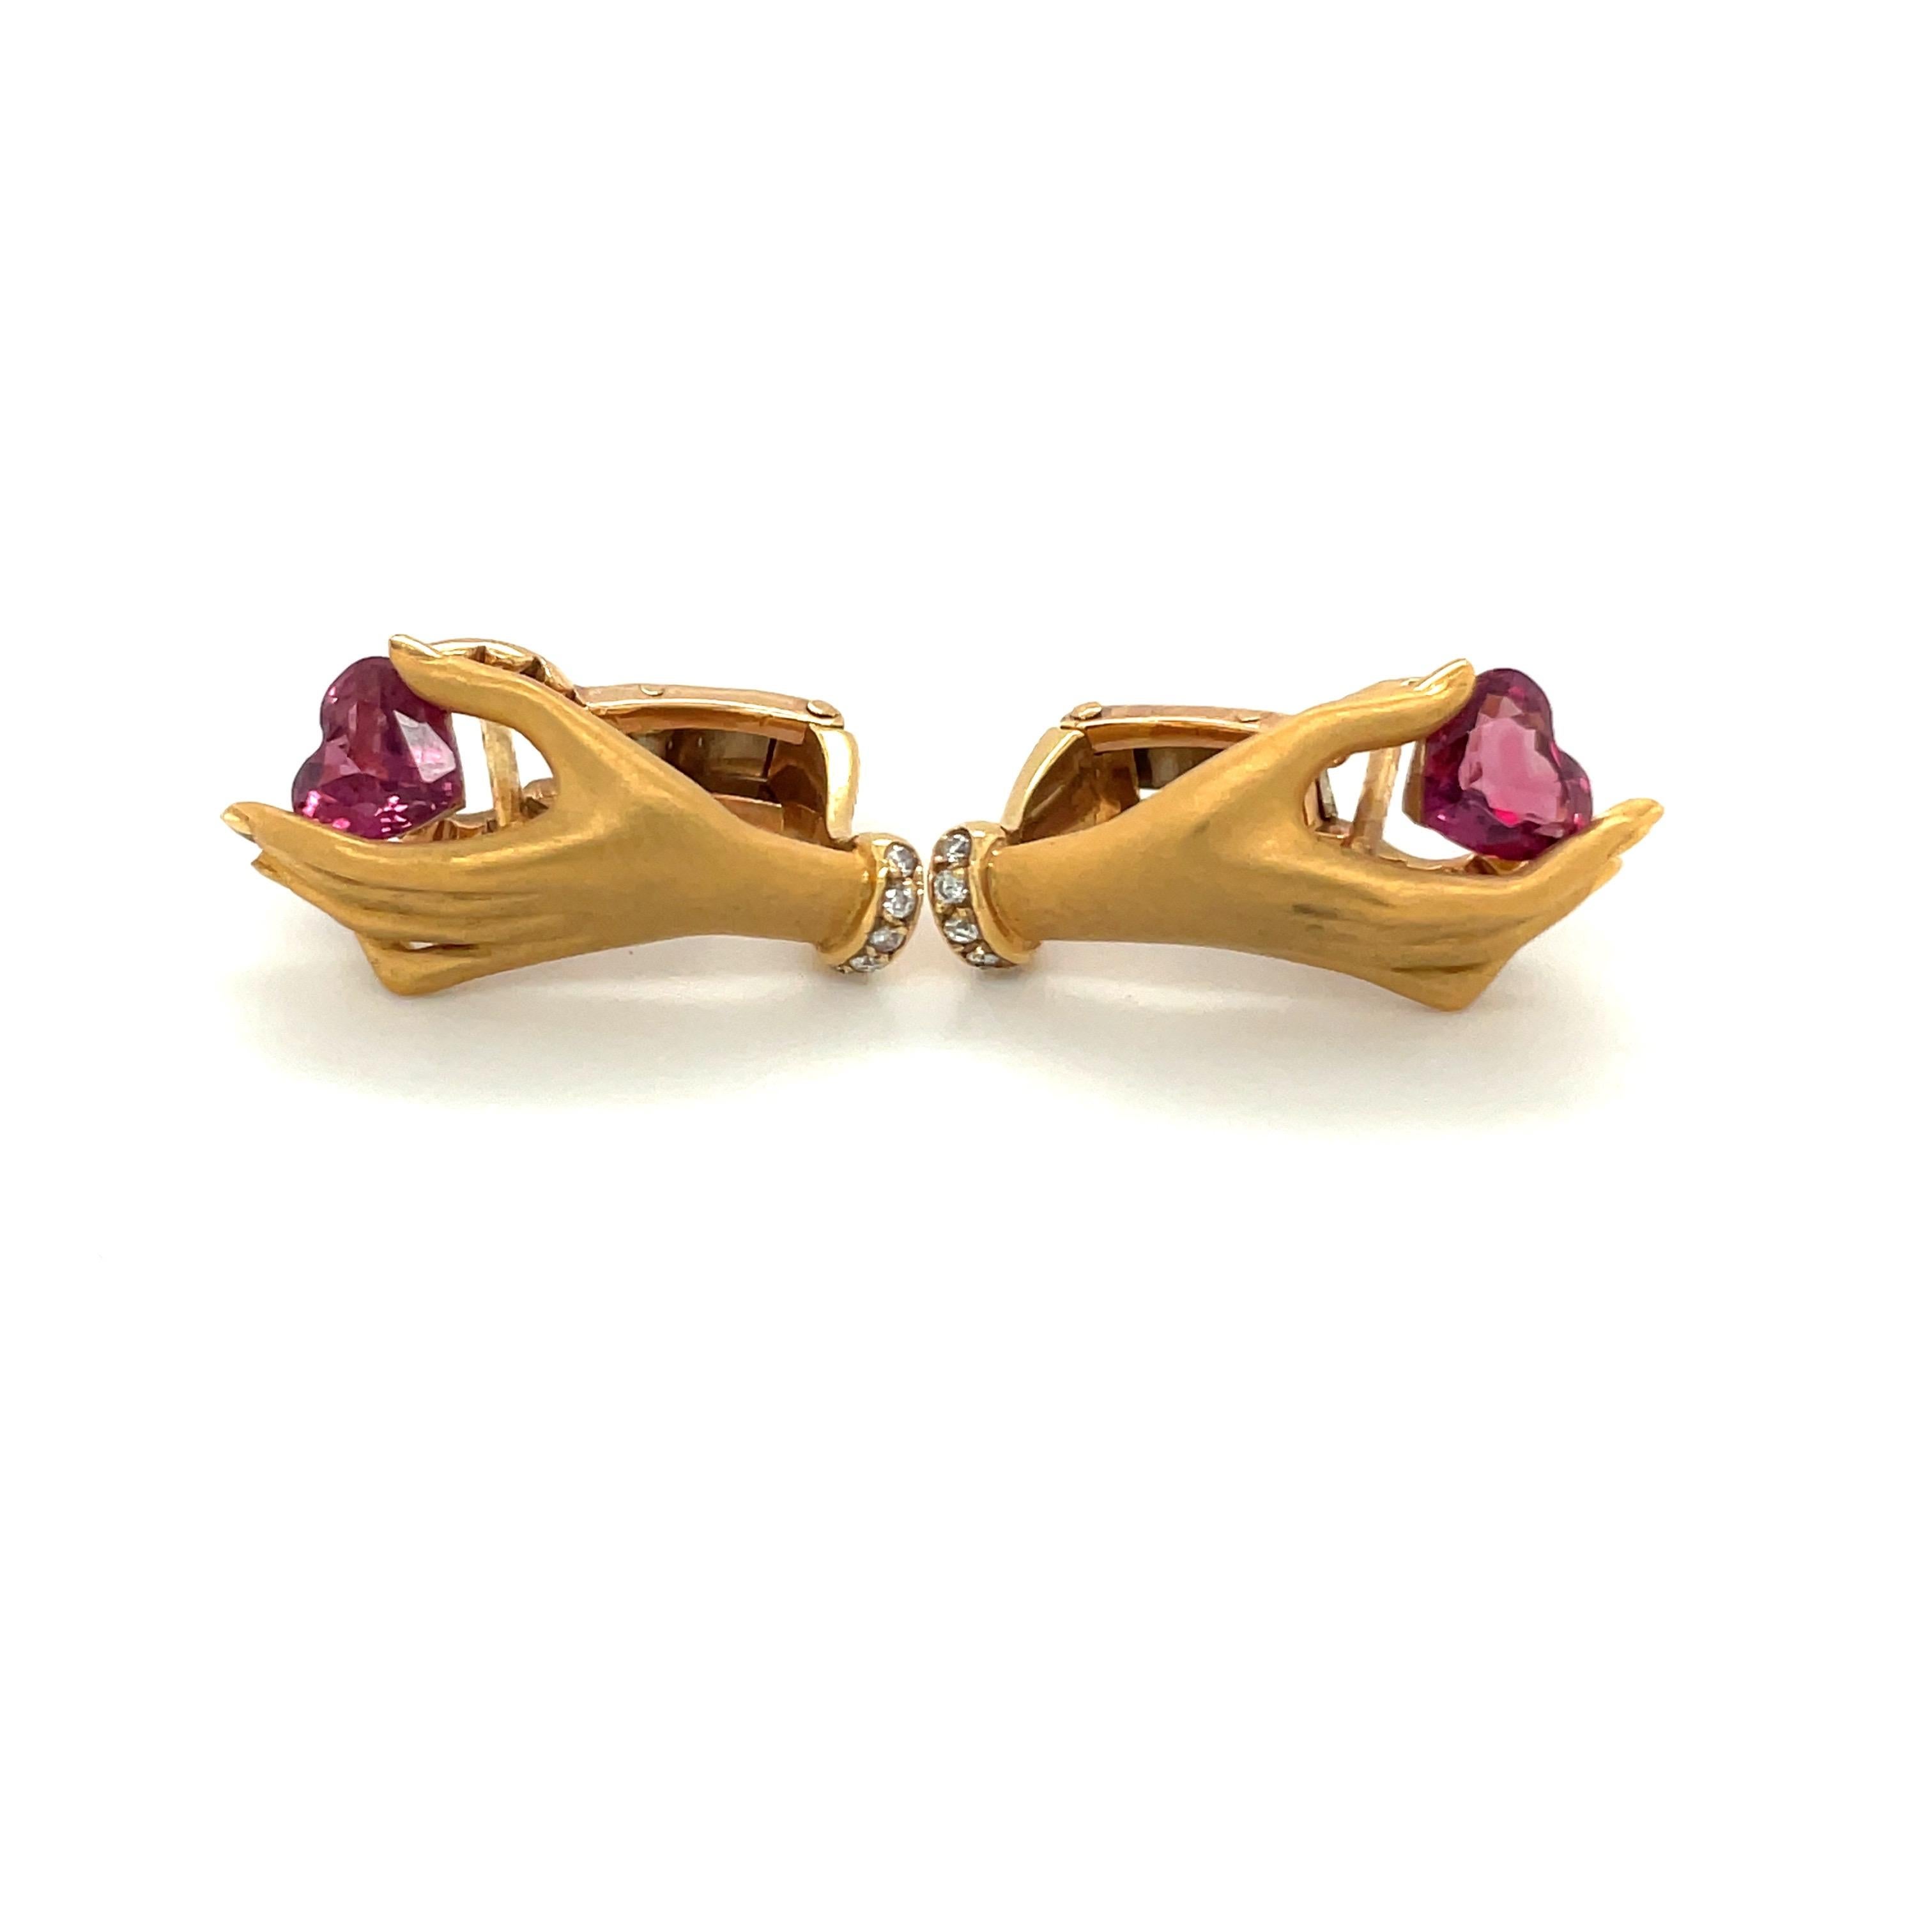 Carrera Y Carrera hat seinen berühmten Namen mit figurativen Designs, einer Besessenheit von Oberflächen und einer überzeugenden Art, die Schönheit in Kunst und Natur zu sehen, begründet.
Diese Ohrringe aus 18 Karat Gelbgold sind ein perfektes